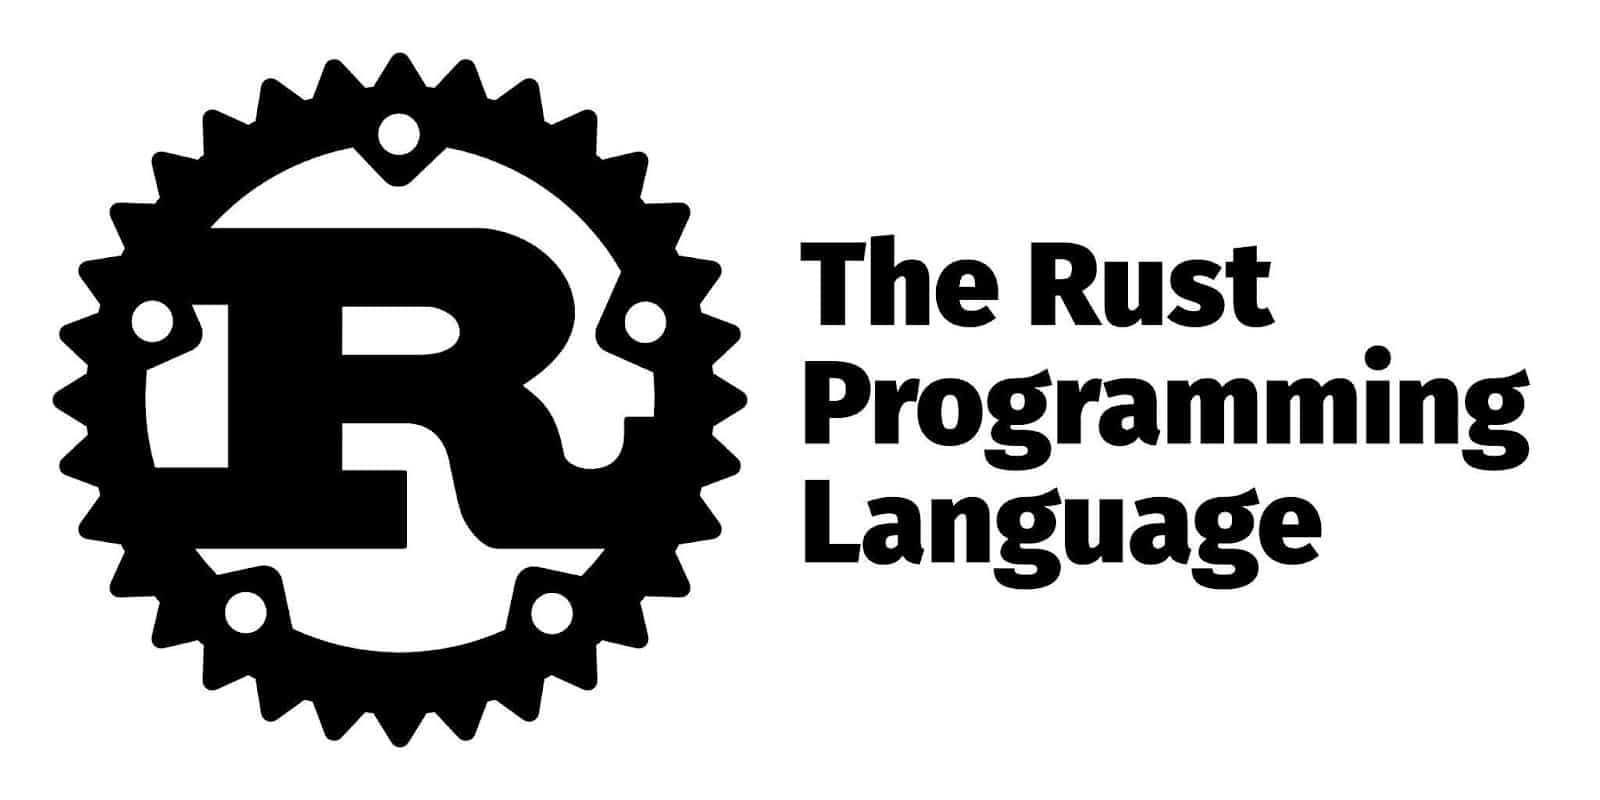 Das Rust-Logo mit dem Namen in fetten Buchstaben rechts neben dem Bild